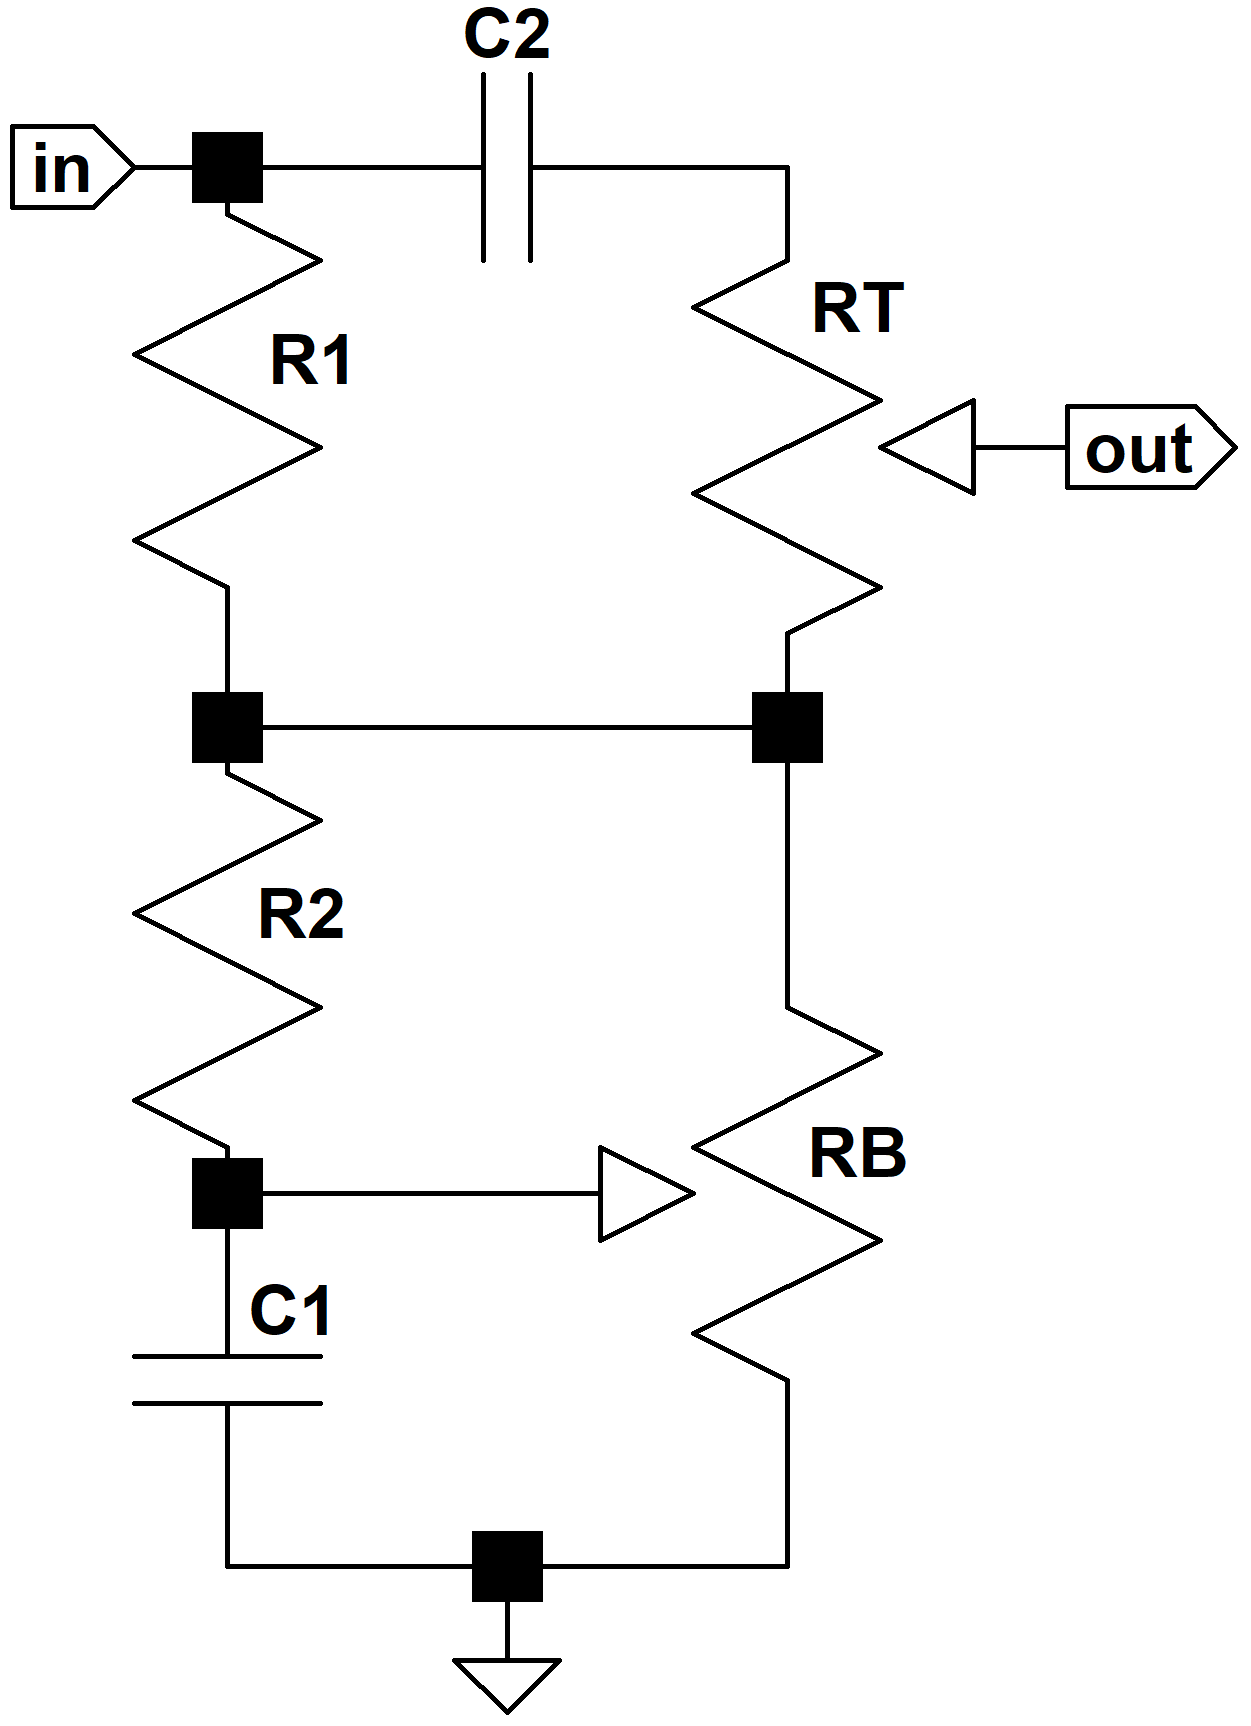 generic CP103 tone stack circuit